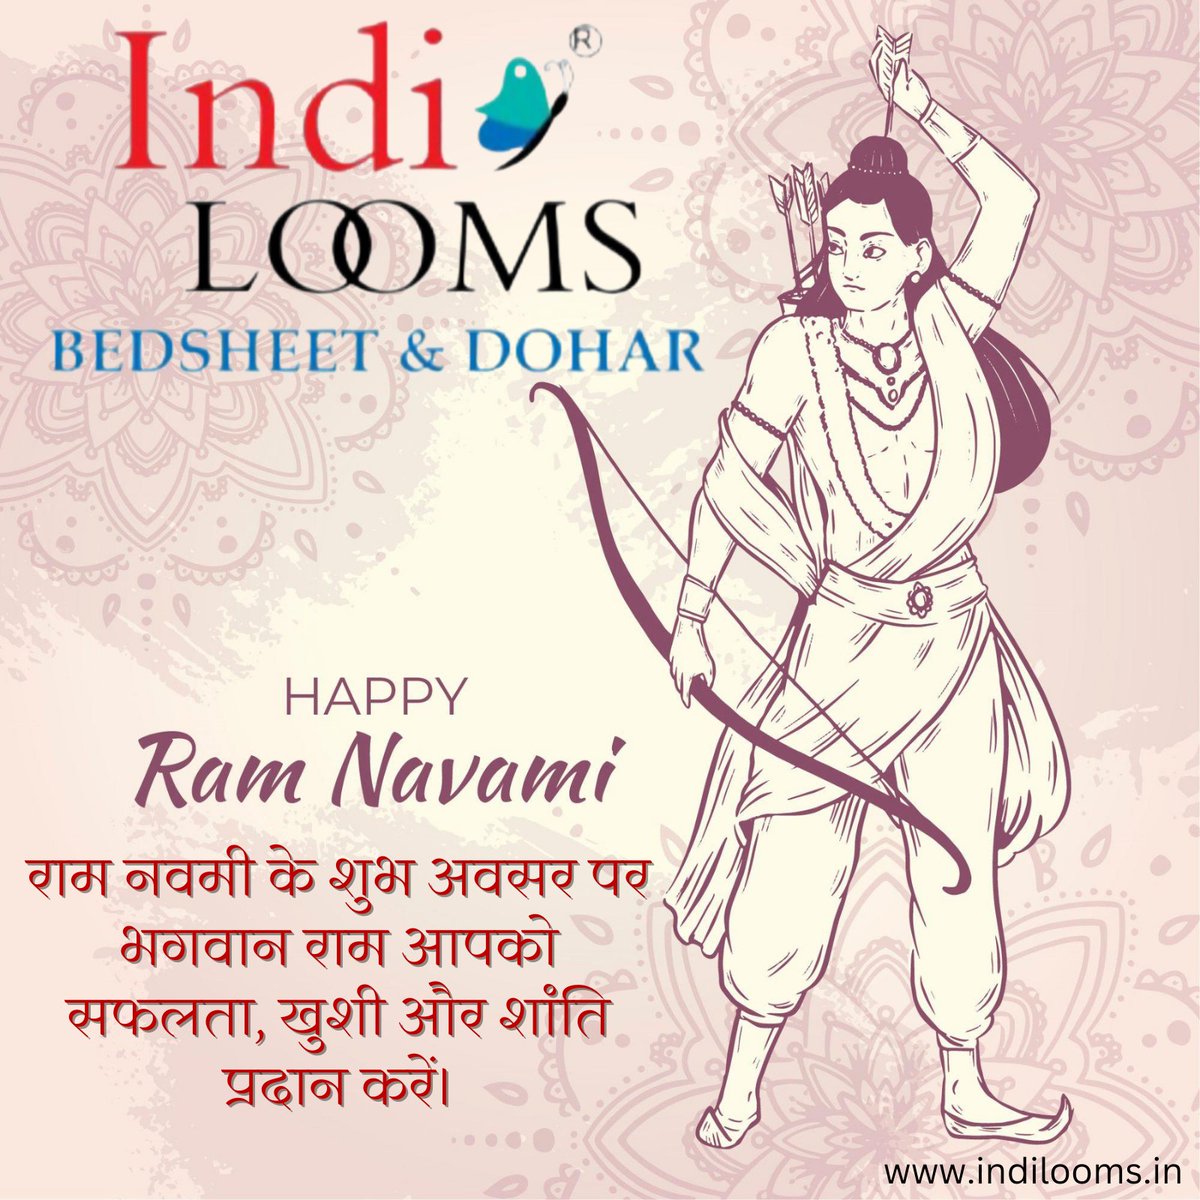 'राम नवमी की हार्दिक शुभकामनाएं! आशा है कि आपके जीवन में राम का आशीर्वाद सदा बना रहे।'

#RamNavami #JaiShriRam #RamaNavami #RamNavami2023 #HinduFestival #IndianFestival #SpiritualCelebration #Bhakti #DivineBlessings #JoyAndPeace #FestivalOfIndia #CultureAndTradition #Celebrating